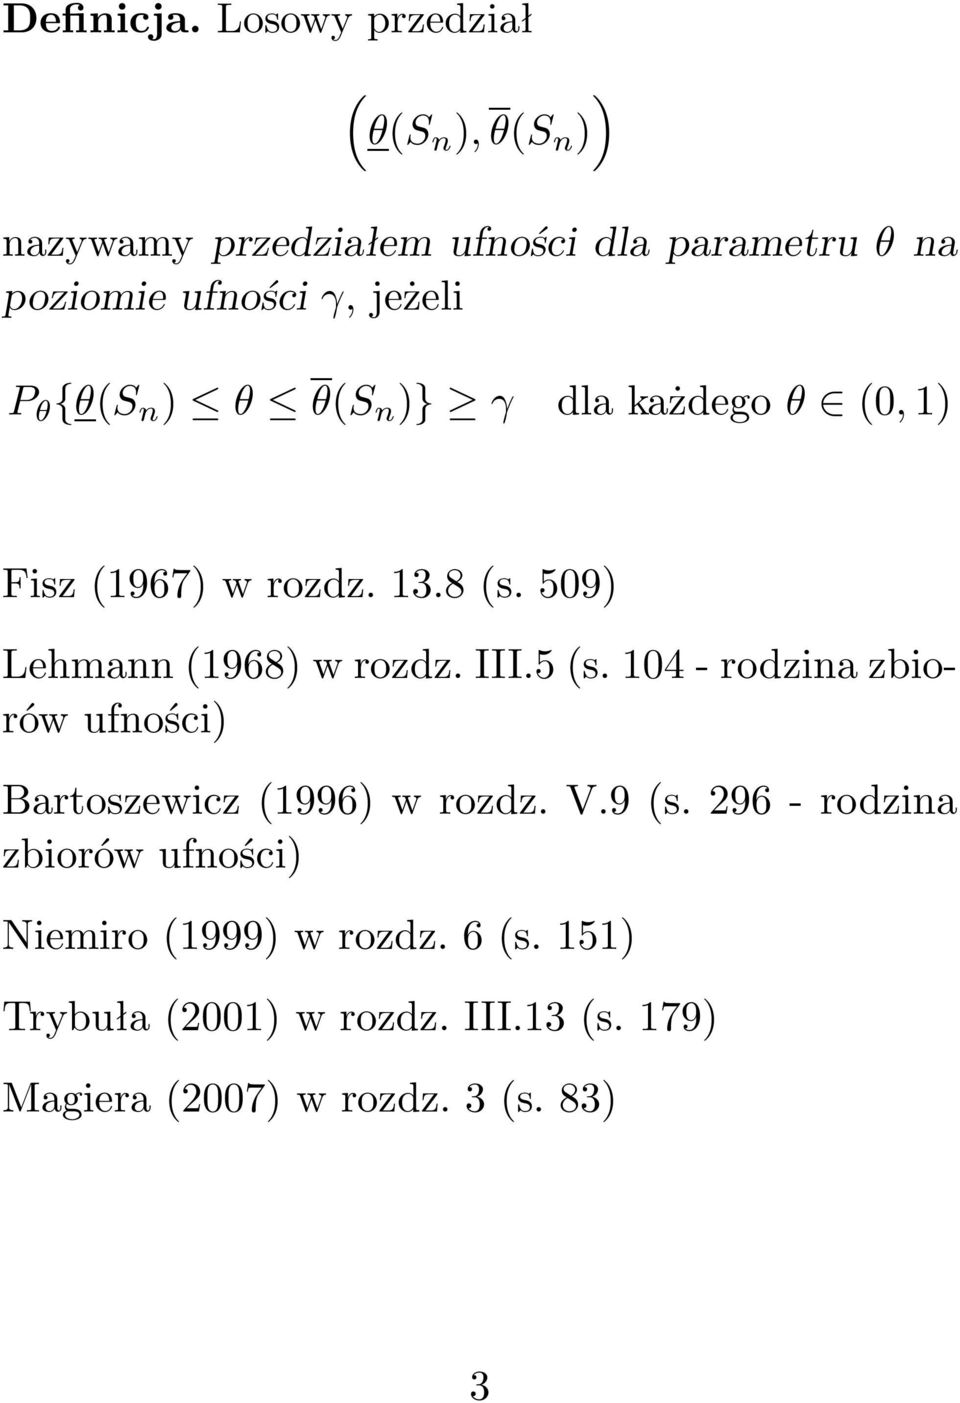 γ, jeżeli P θ {θ(s n ) θ θ(s n )} γ dlakażdegoθ (0,1) Fisz(1967)wrozdz.13.8(s.509) Lehmann(1968)wrozdz.